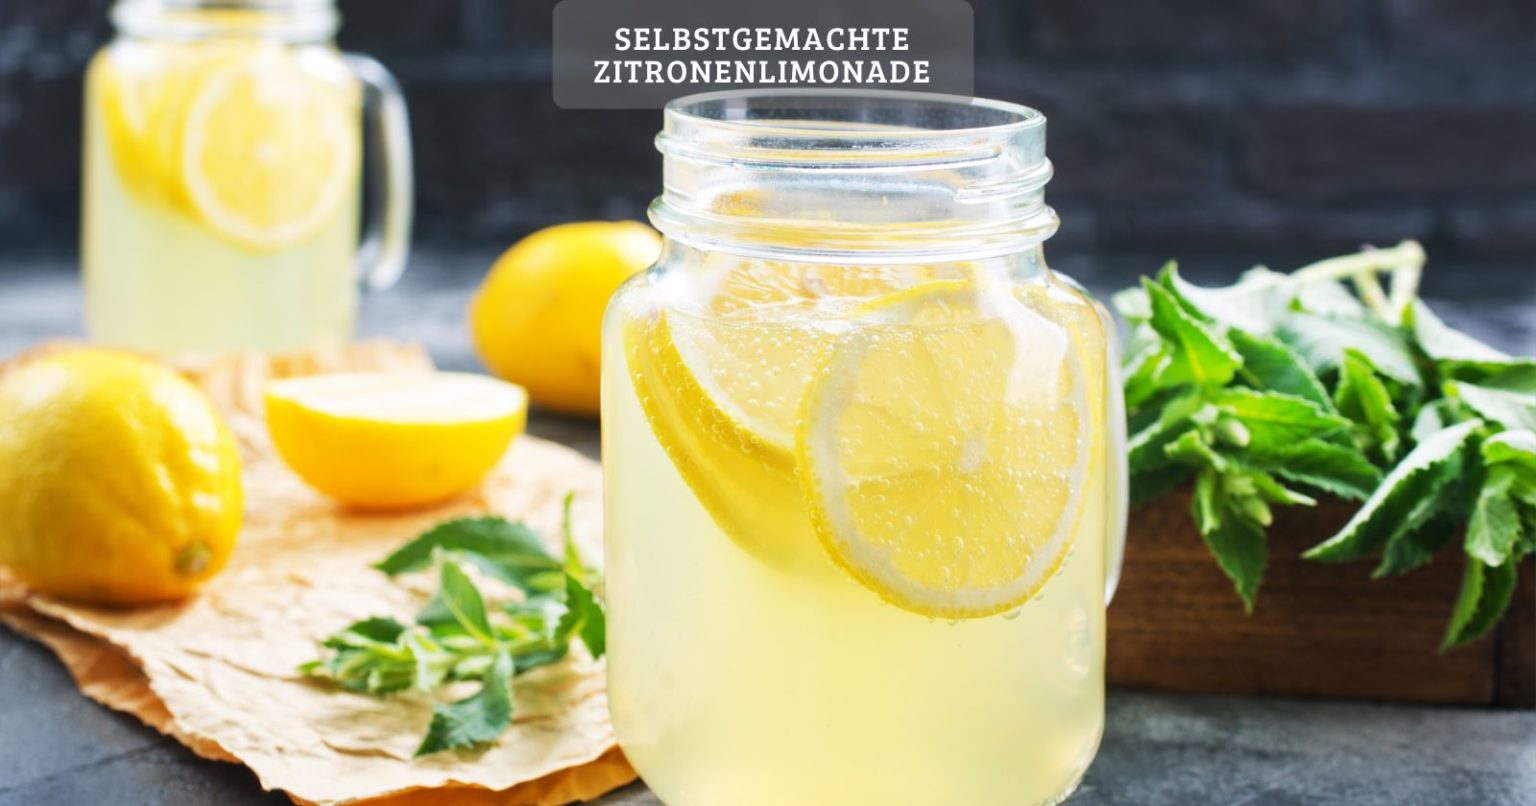 Der Klassiker: Zitronenlimonade selber machen!